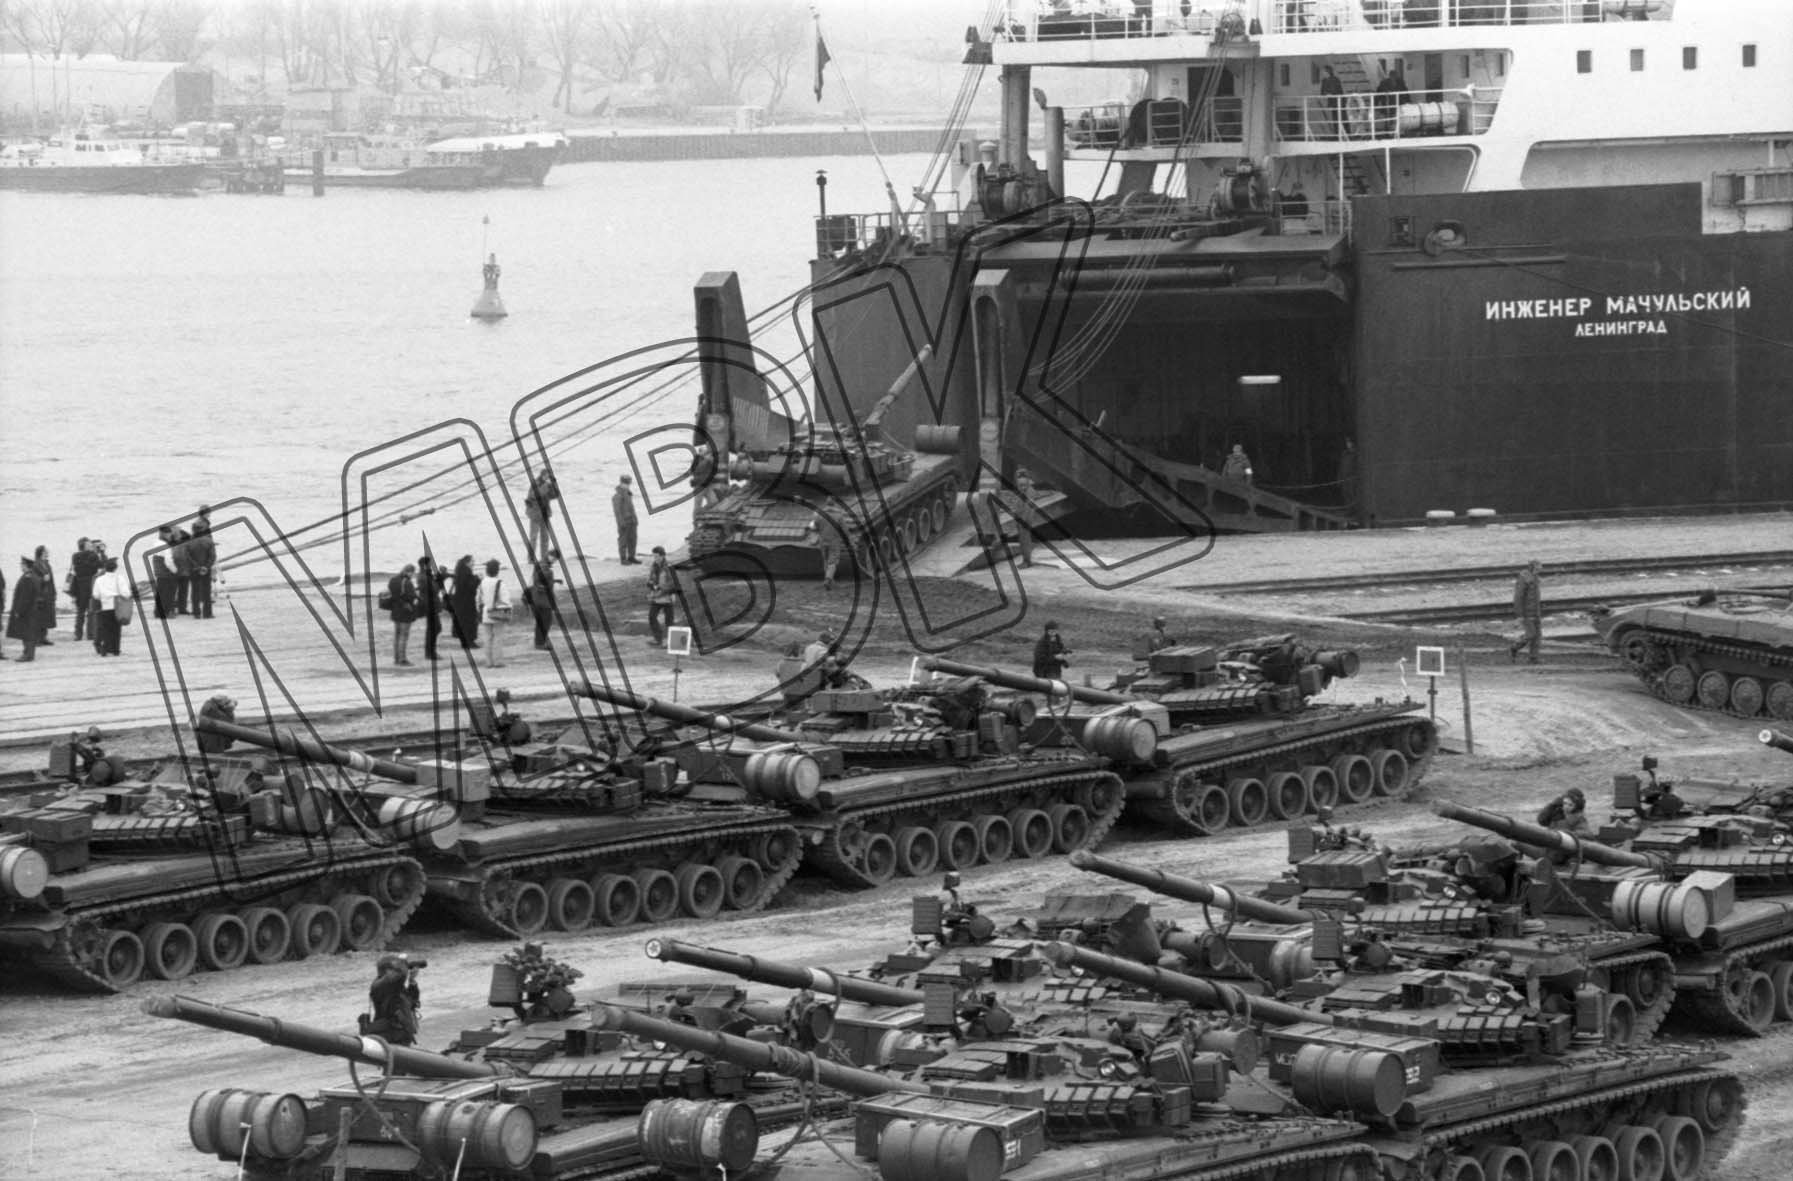 Fotografie: Verladung von Panzern auf ein Fährschiff, Rostocker Hafen, 27. März 1992 (Museum Berlin-Karlshorst RR-P)